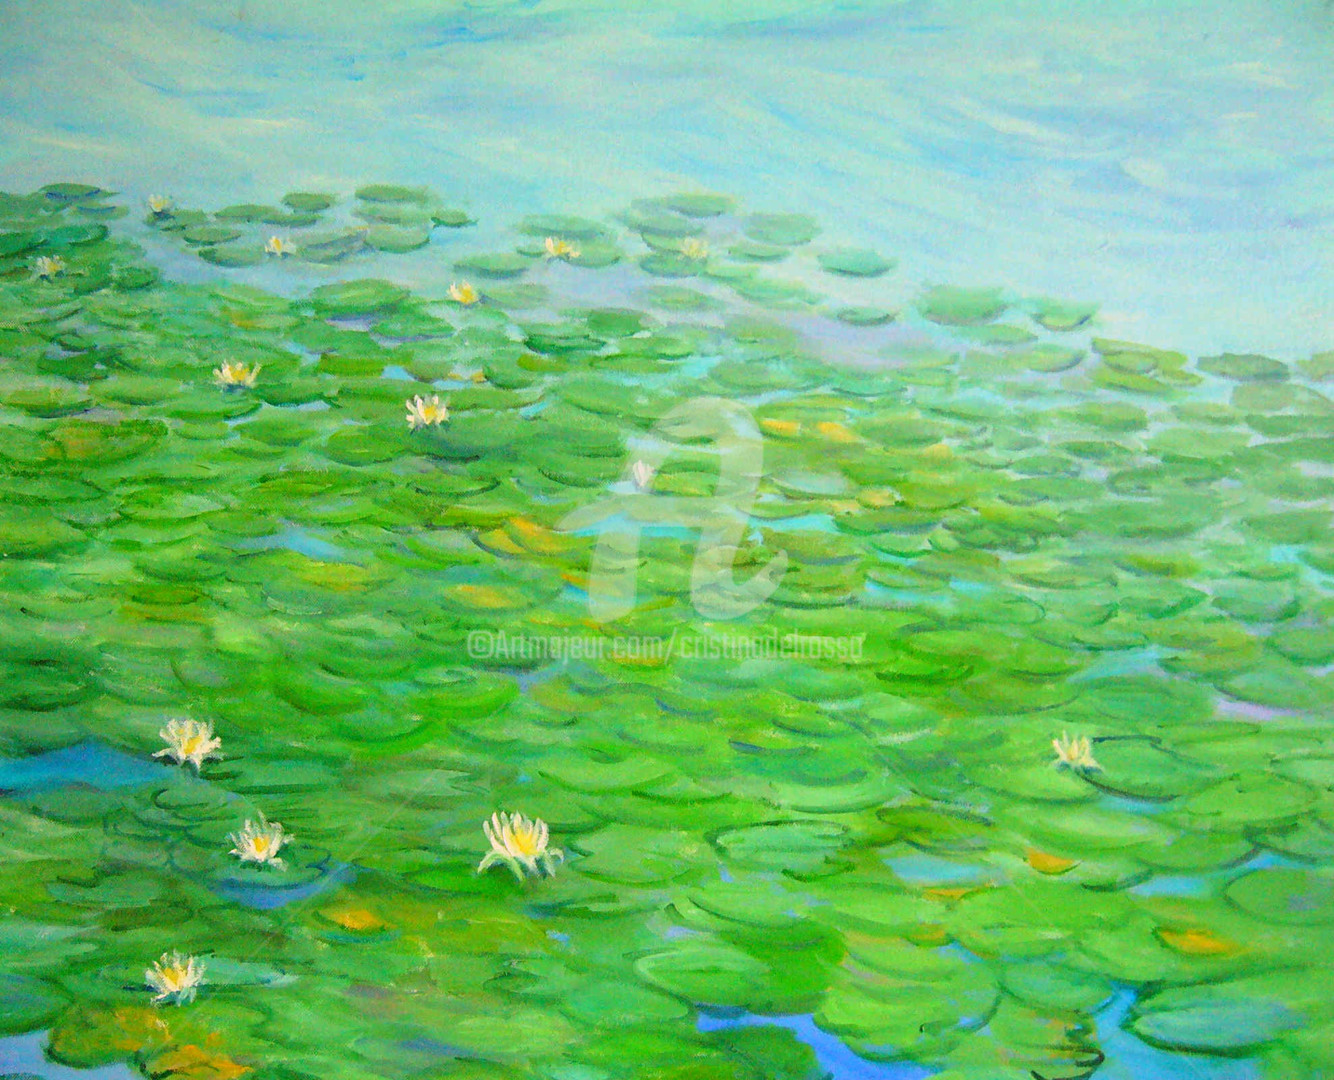 Cristina Del Rosso - Nenúfares en el Danubio (Waterlilies on the Danube)